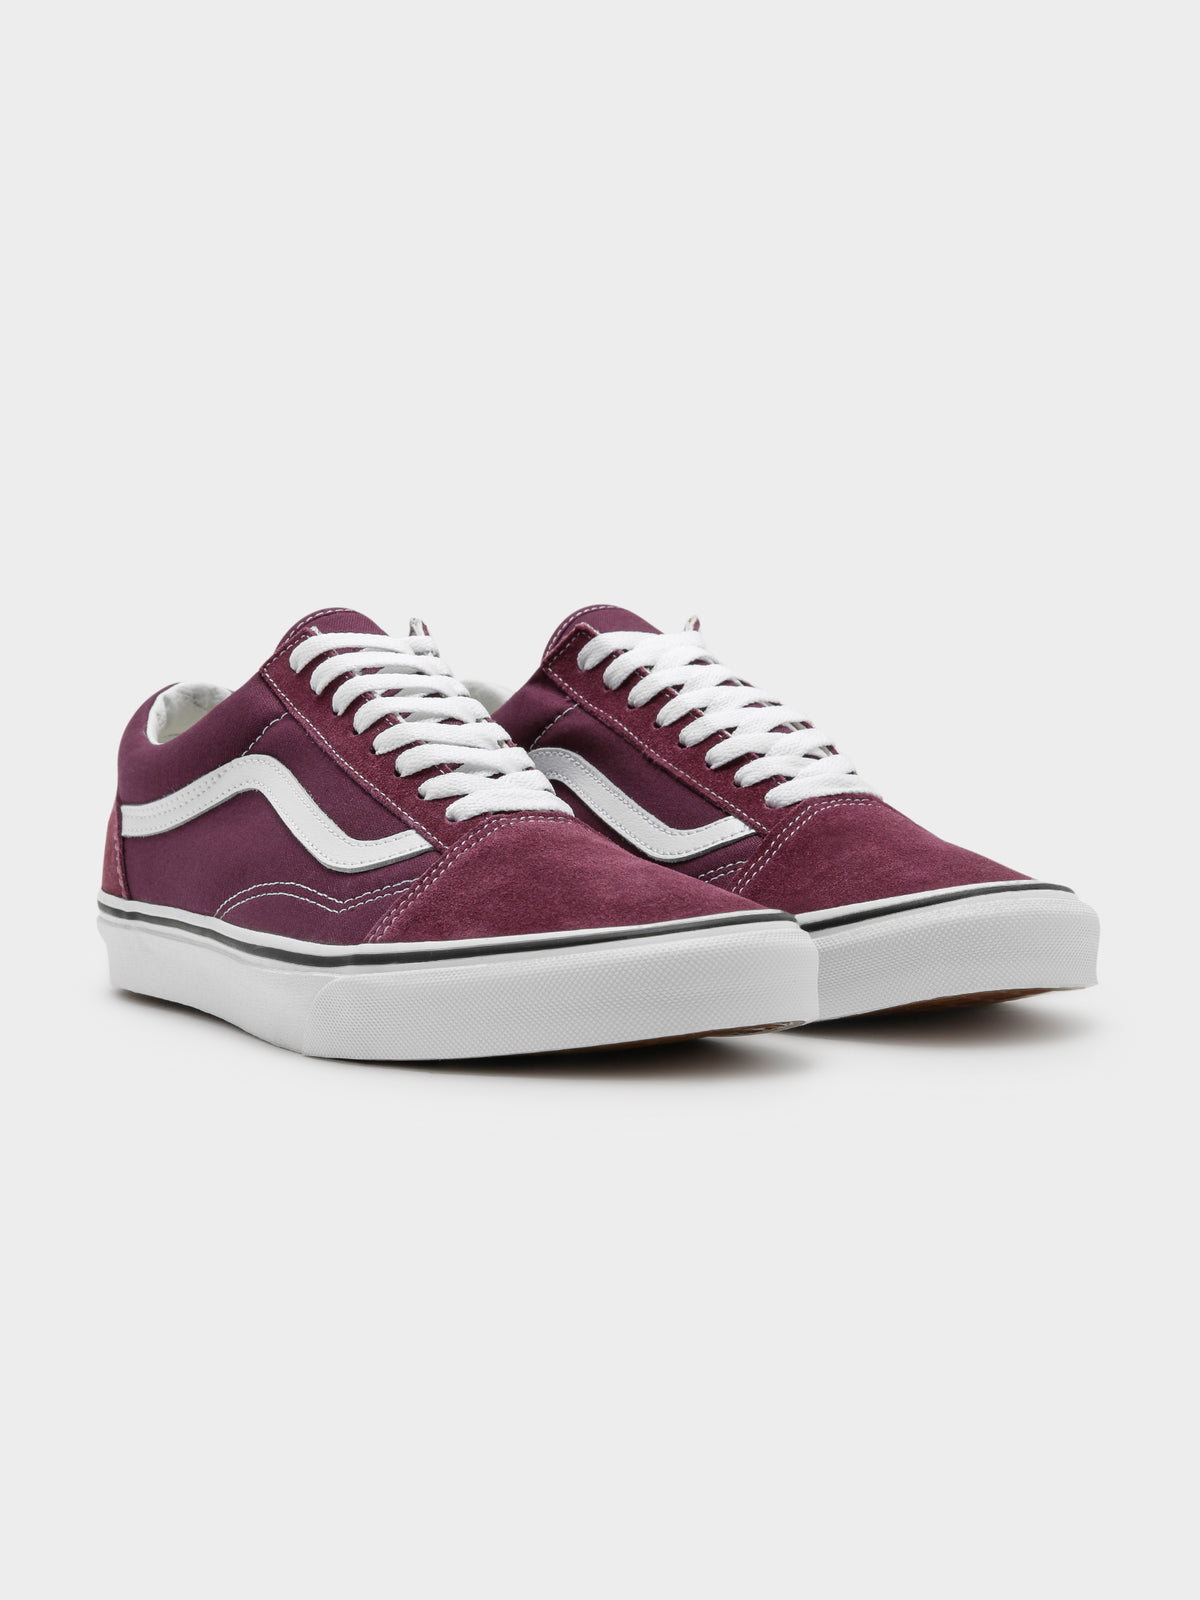 Unisex Old Skool Sneakers in Grape Purple